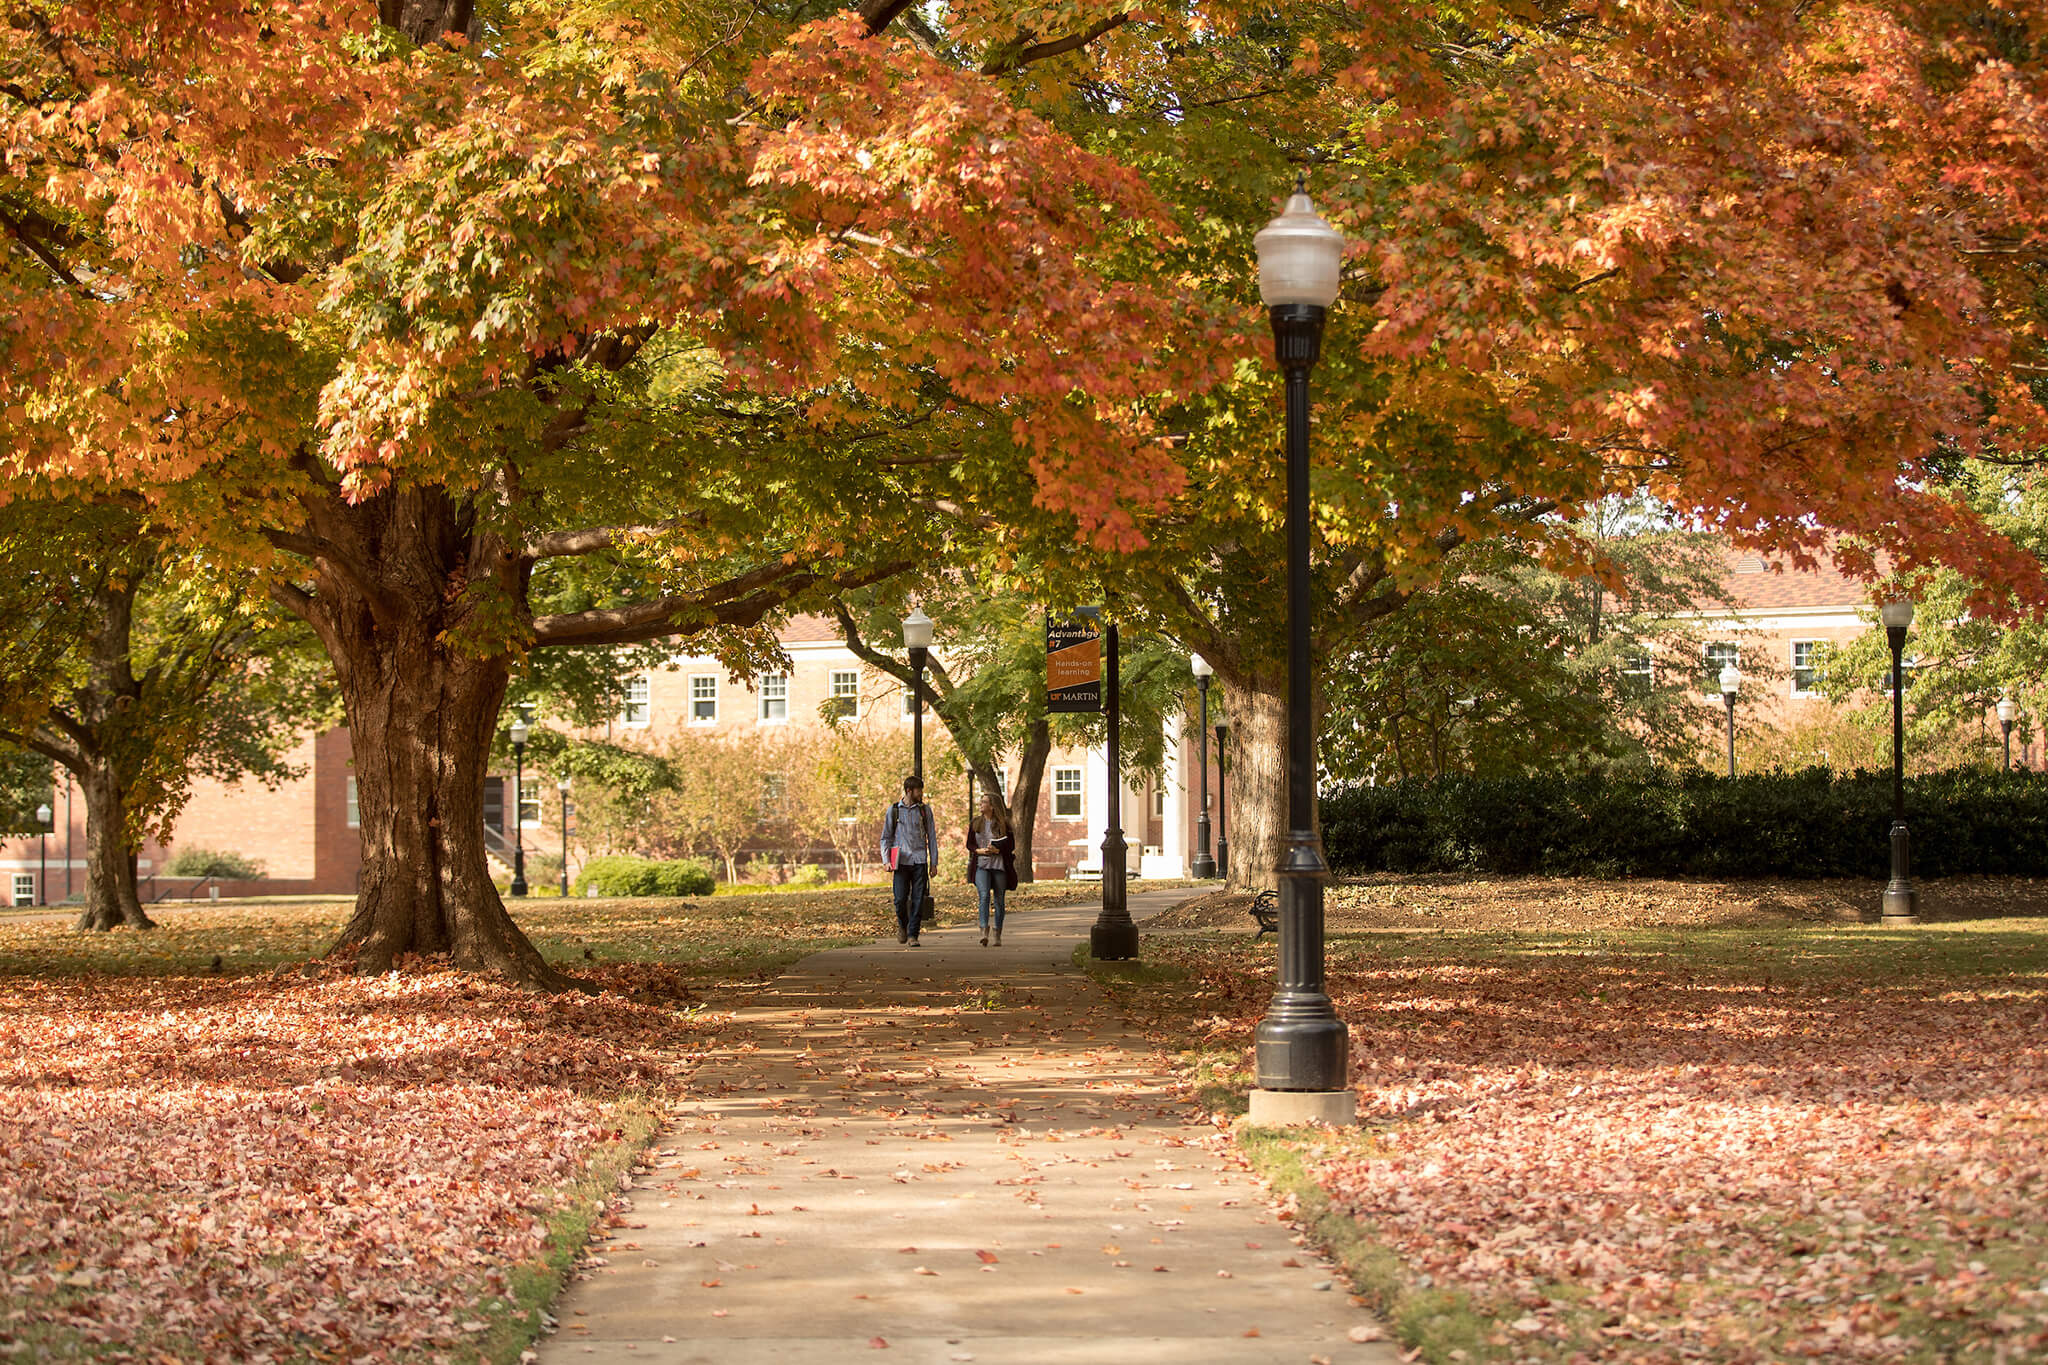 Campus quad in fall